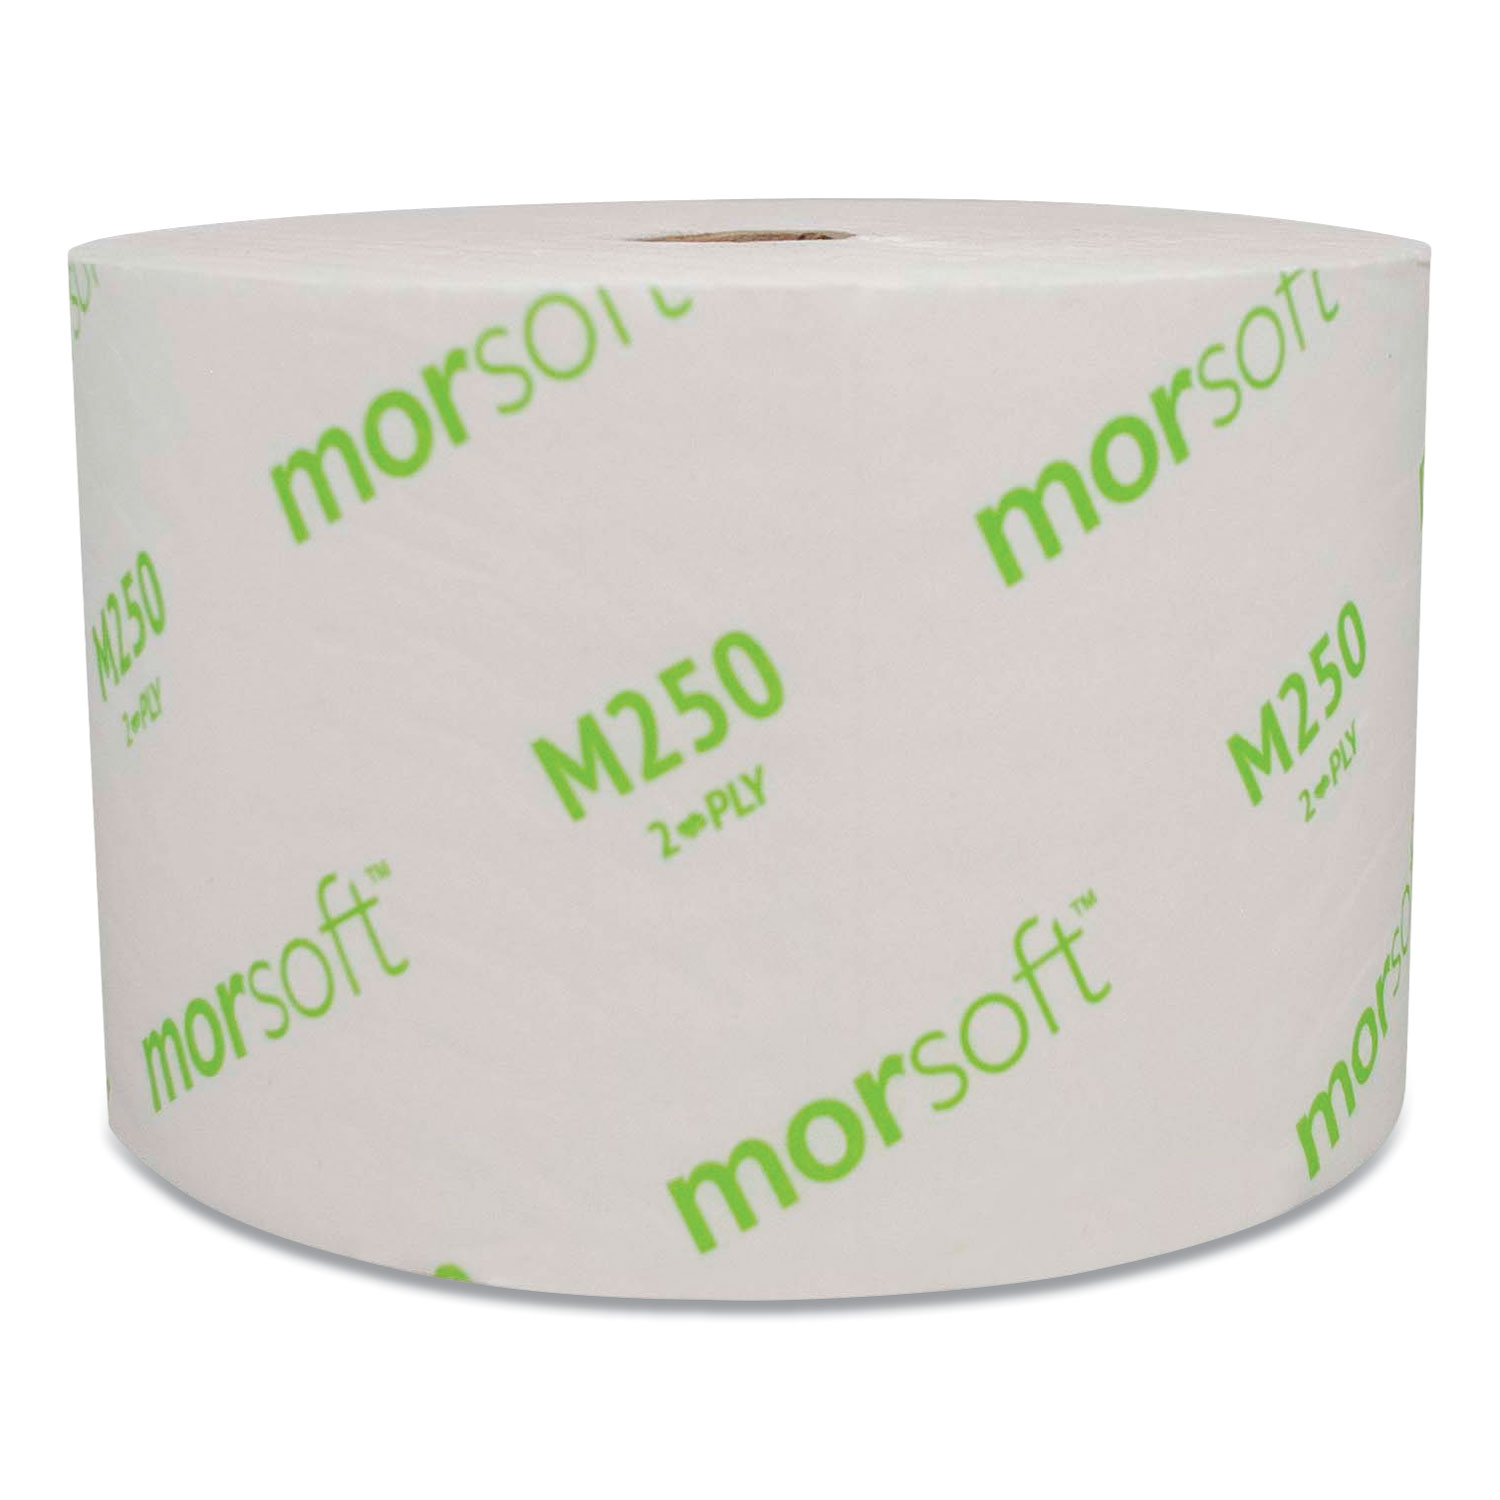  Morcon Tissue M250 Small Core Bath Tissue, Septic Safe, 2-Ply, White, 1250/Roll, 24 Rolls/Carton (MORM250) 